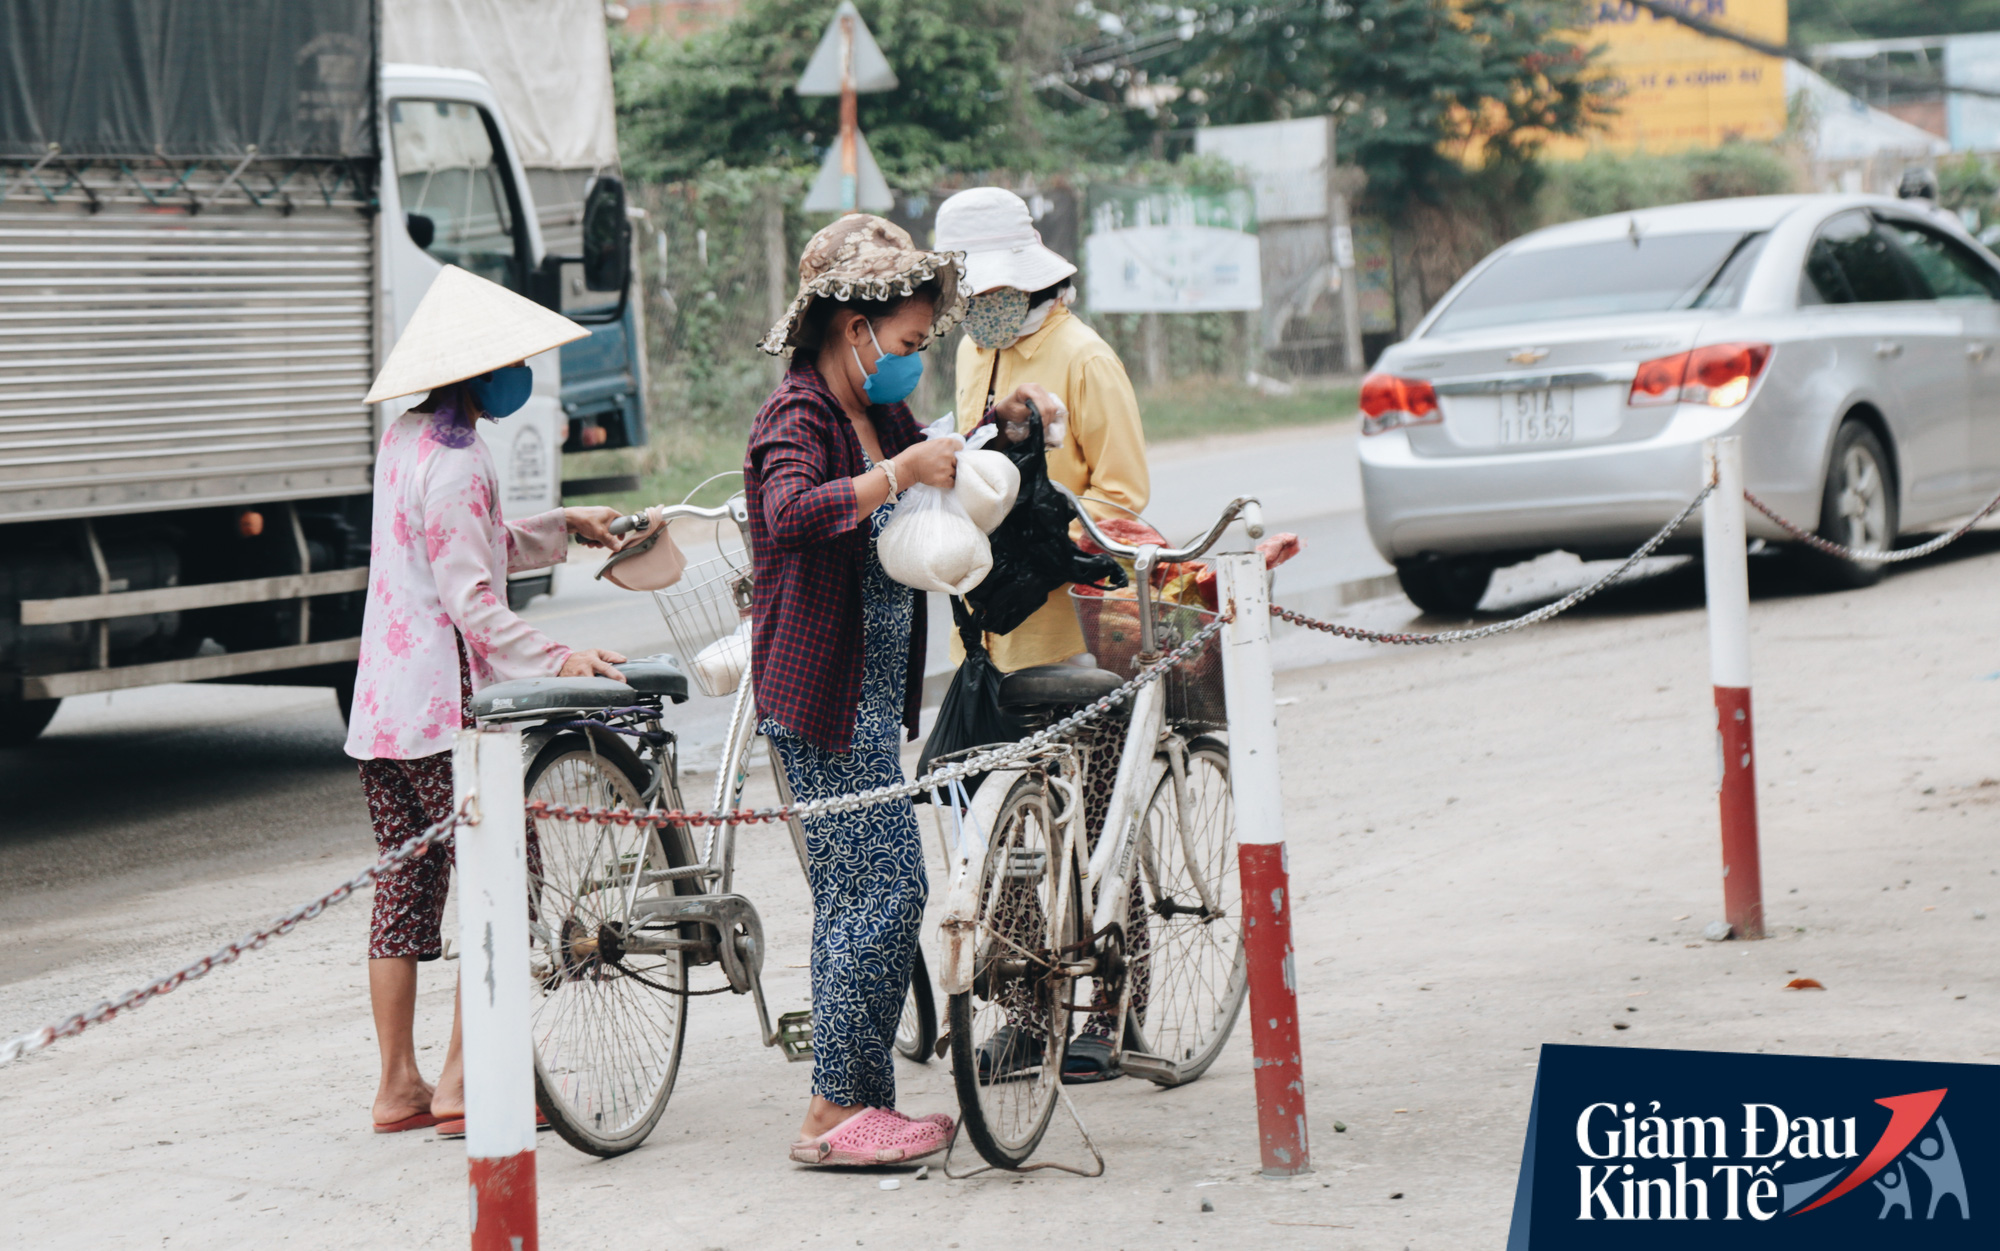 ATM gạo thứ 2 ở Sài Gòn chính thức hoạt động, bà con khó khăn chỉ cần nhìn camera, máy sẽ tự động nhả gạo - Ảnh 12.